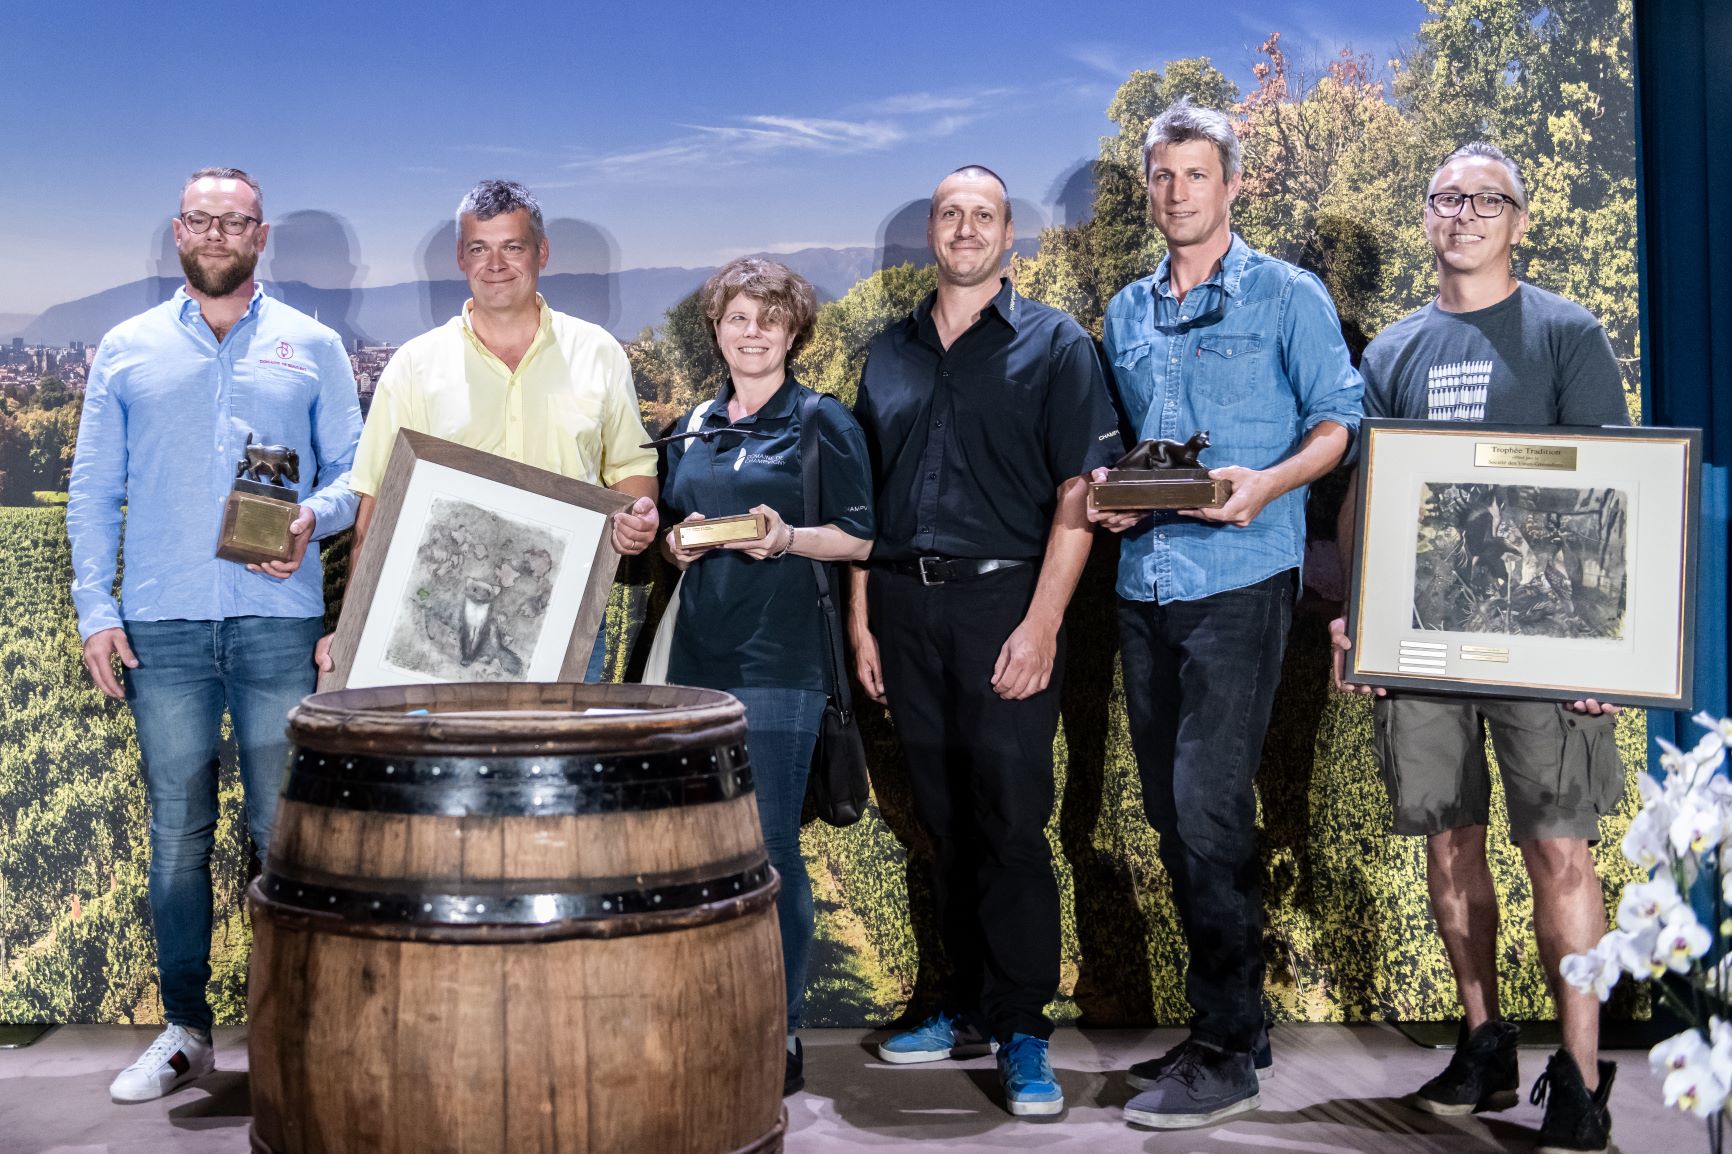 Copyright: Anna Pizzolante - Les lauréats de la Sélection des vins de Genève 2019. De gauche à droite: Domaine de Beauvent, Domaine de Miolan, Domaine de Champvigny, La Cave de Genève, Domaine du Centaure.